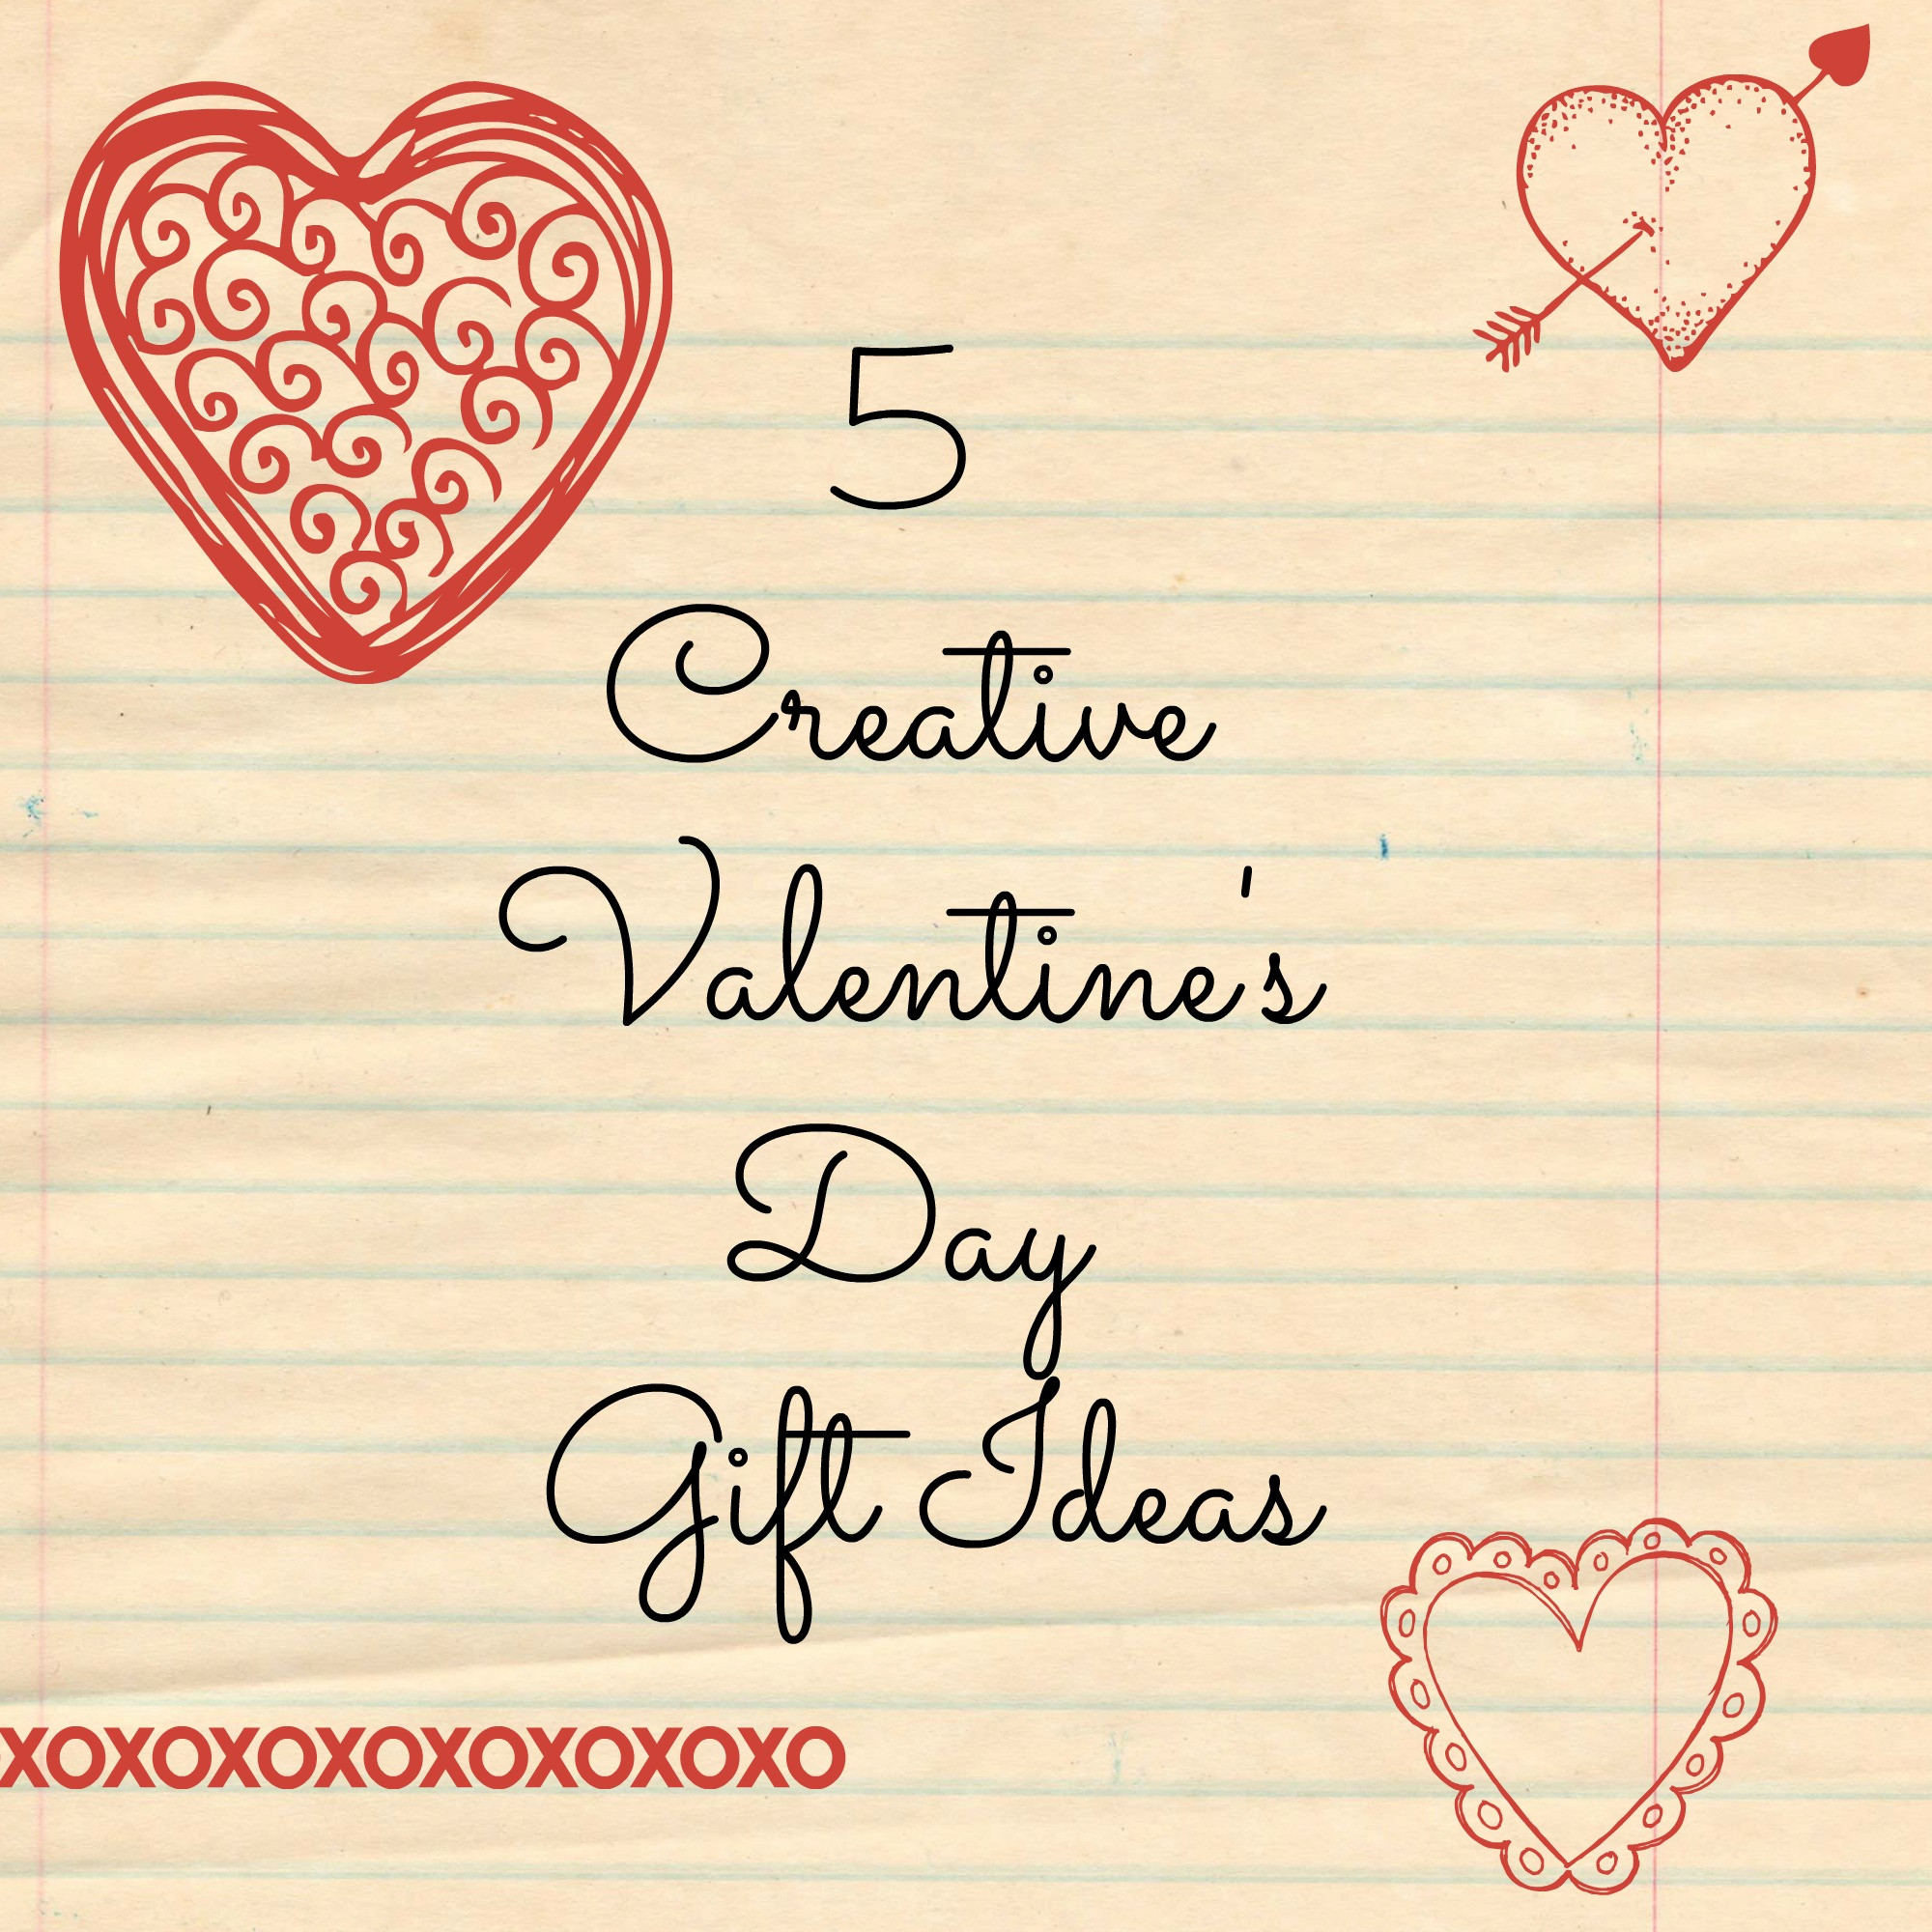 Valentines Day Creative Gift Ideas
 5 Creative Valentine’s Day Gift Ideas